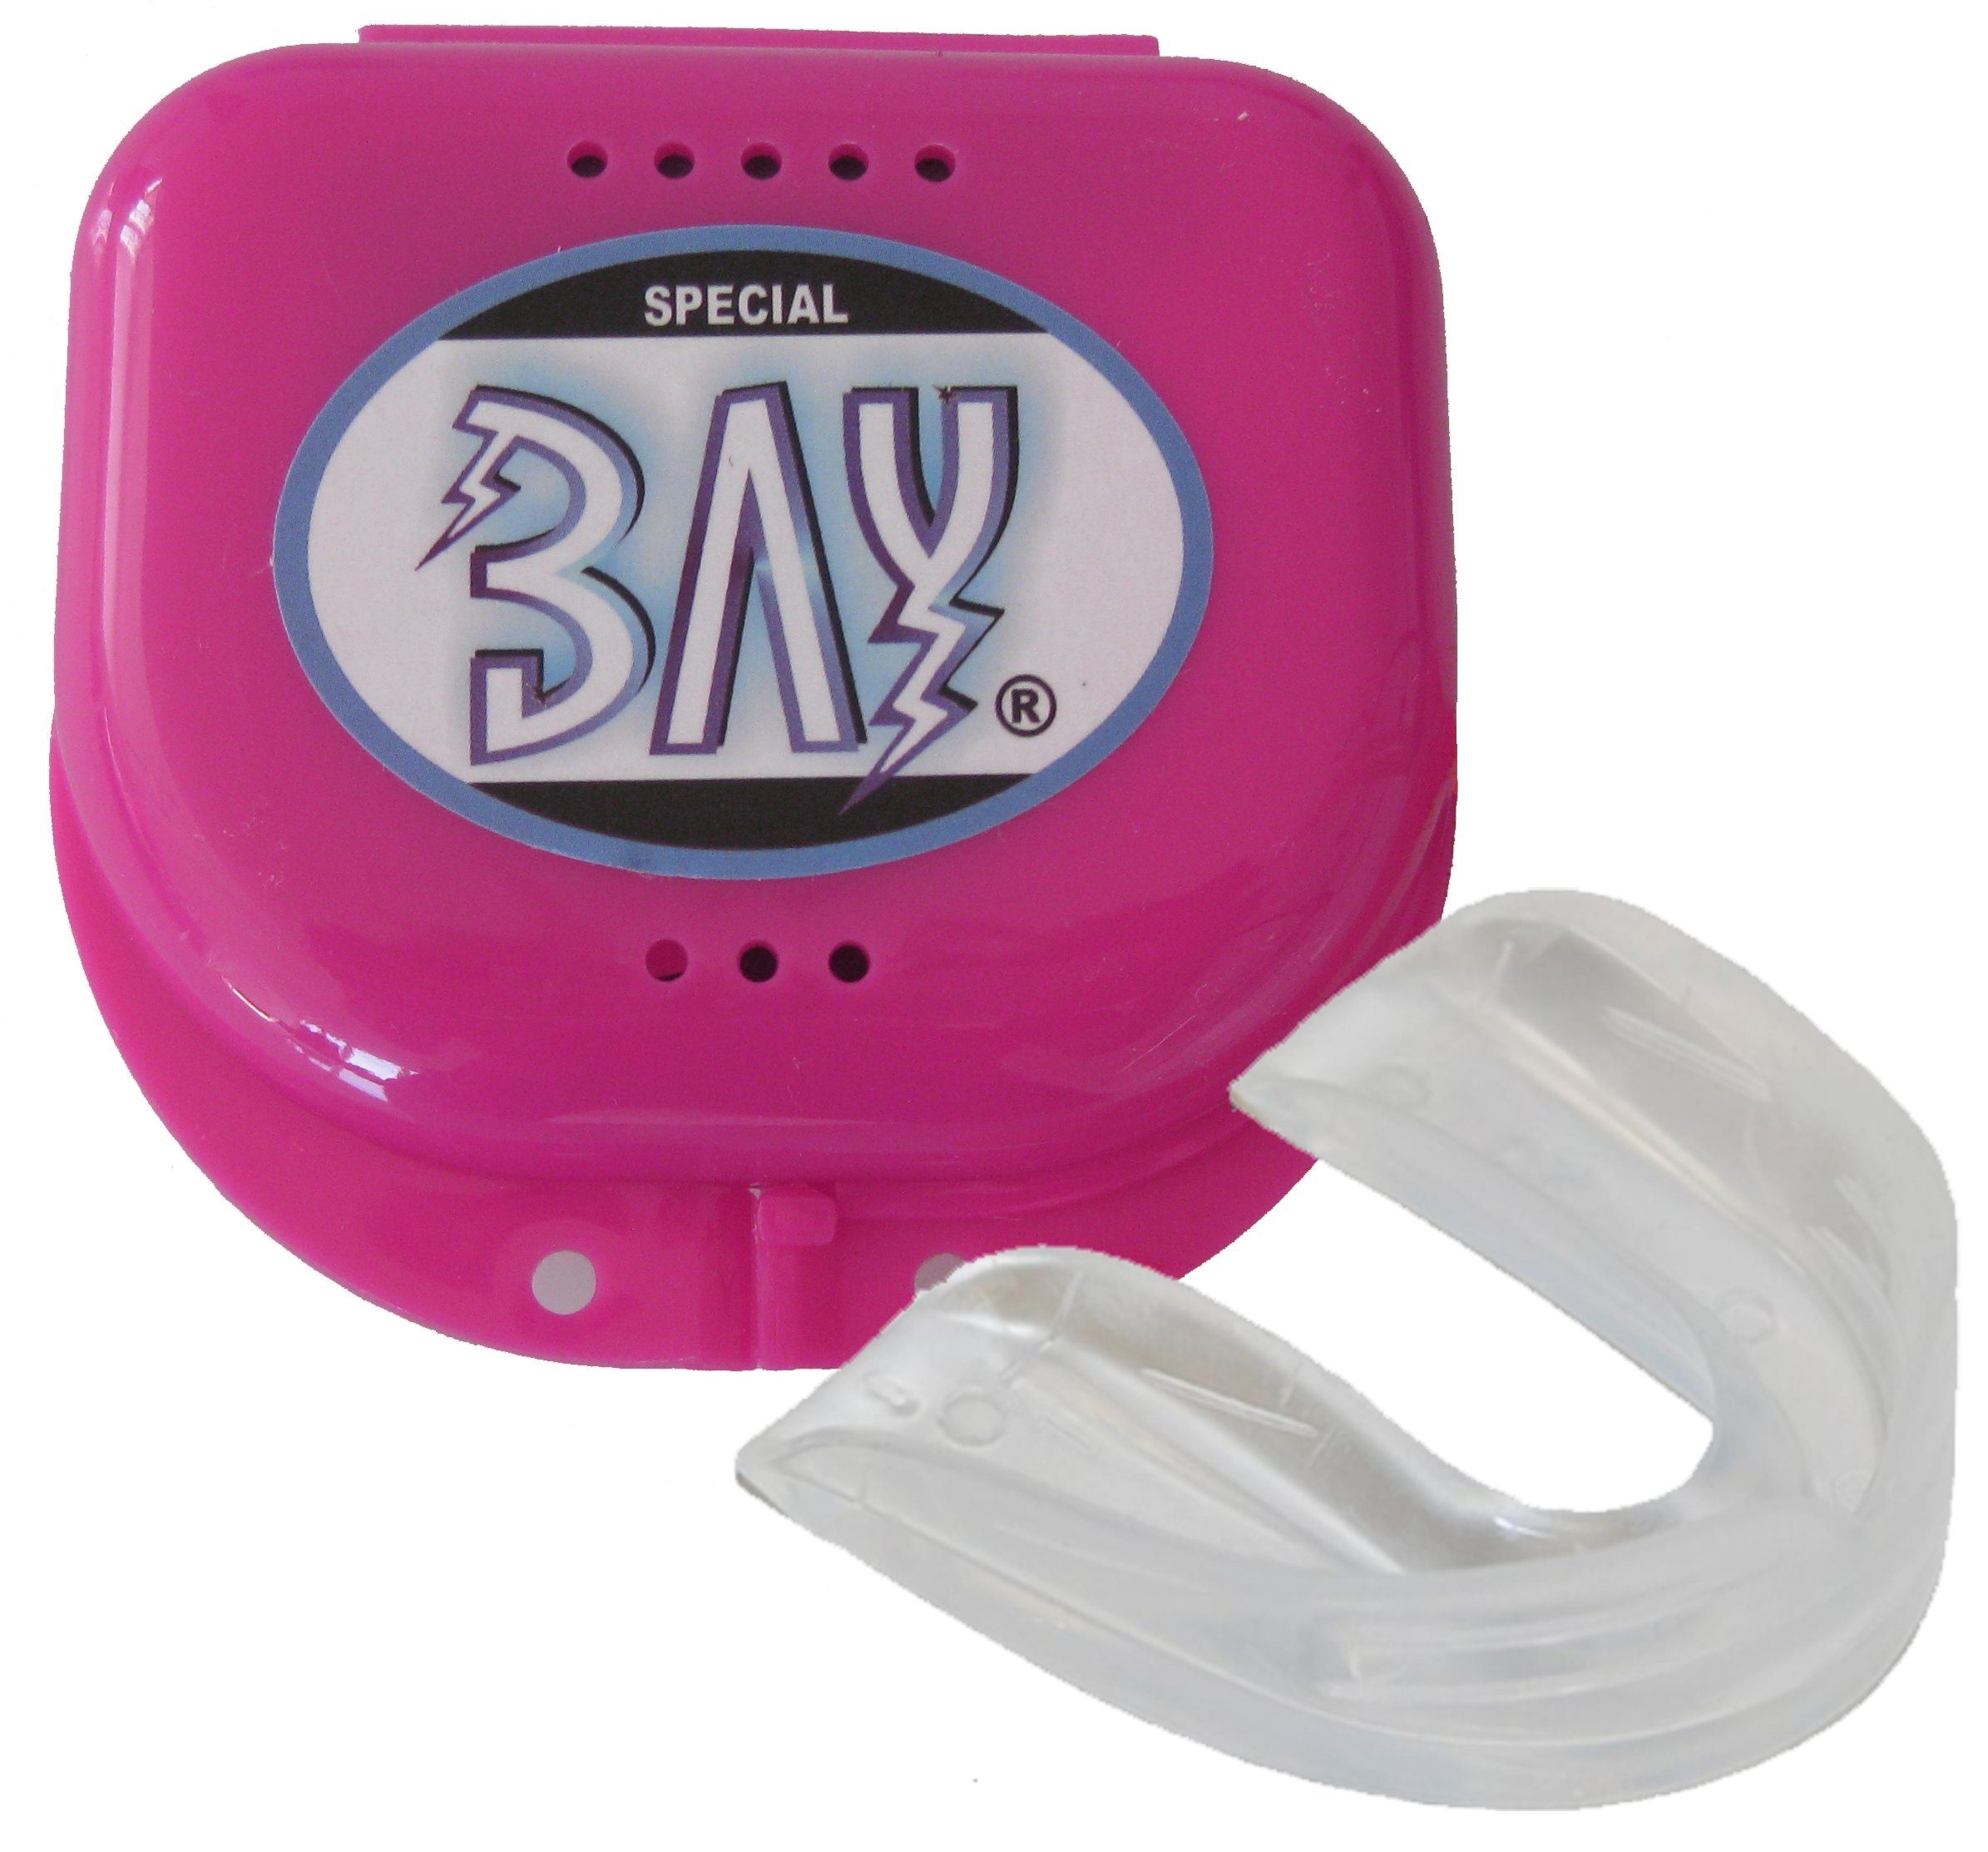 BAY-Sports Zahnschützer Mundschutz Wasserbad - Anpassung im Zahnschutz Sport M-Line Erwachsene, rosa Dose transparent